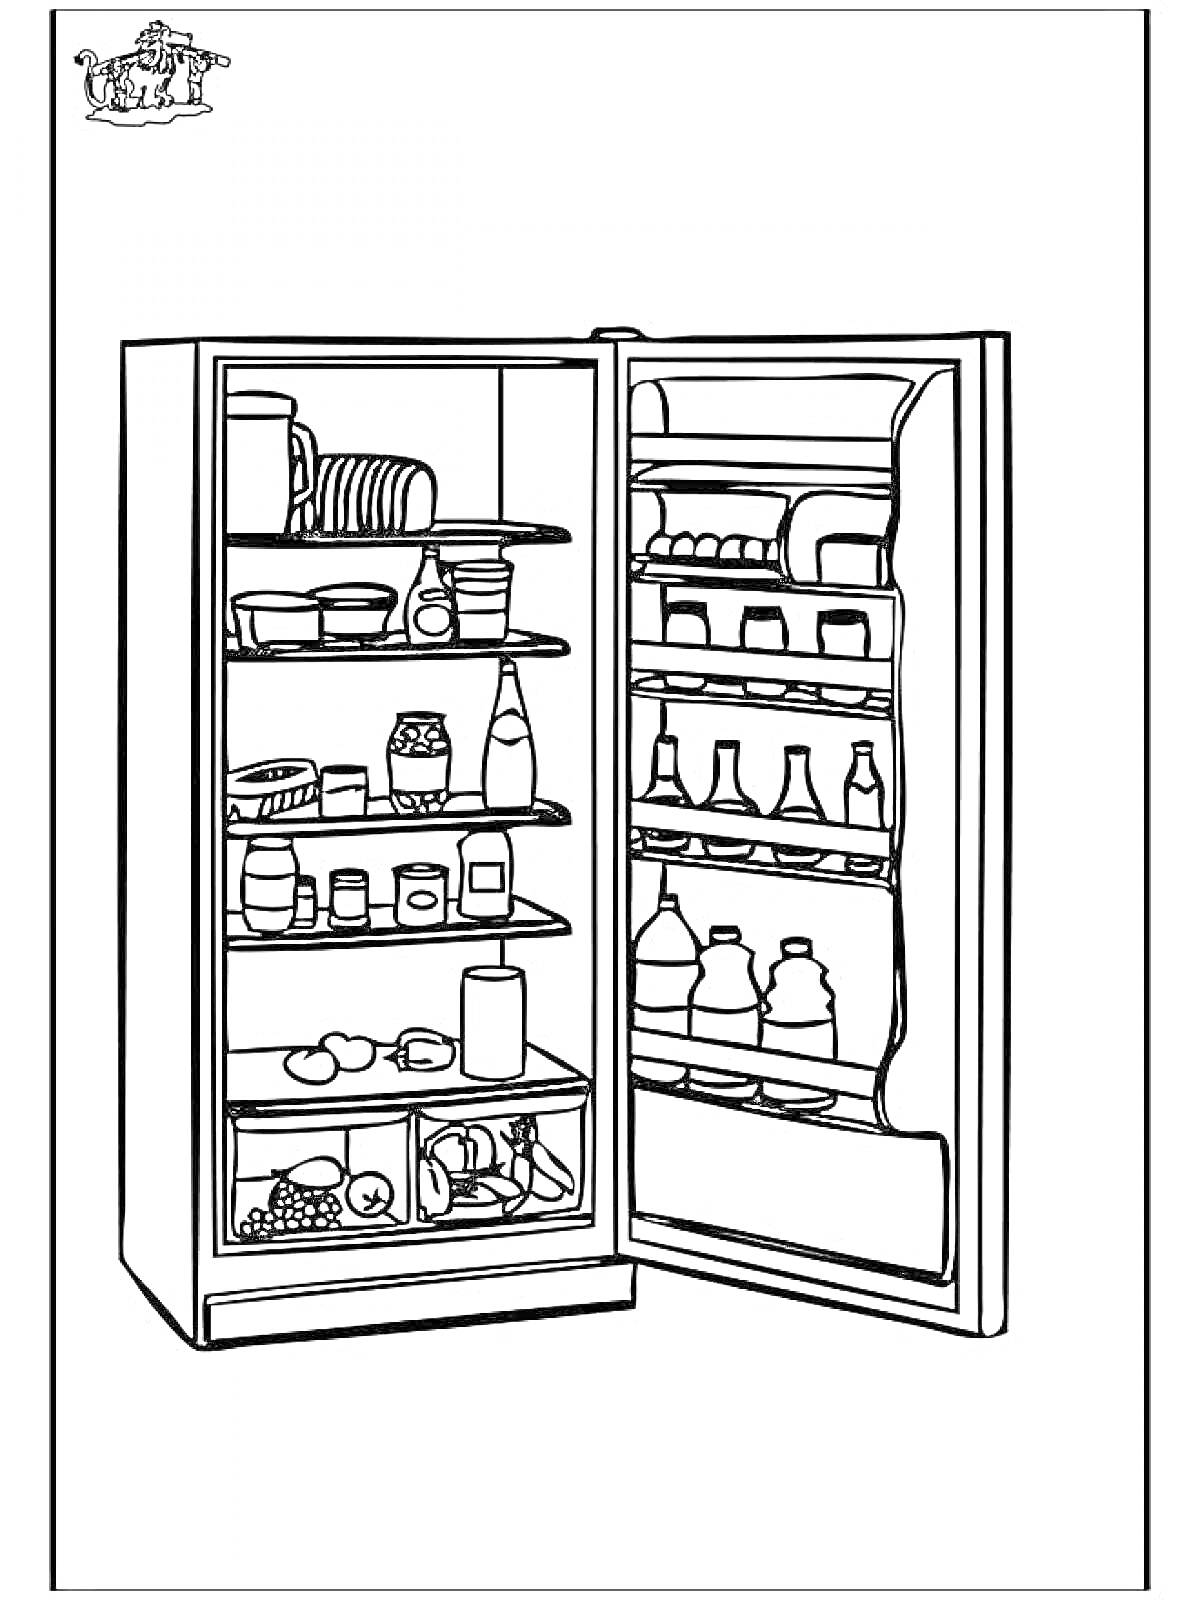 РаскраскаХолодильник с продуктами, бутылками, банками и овощами